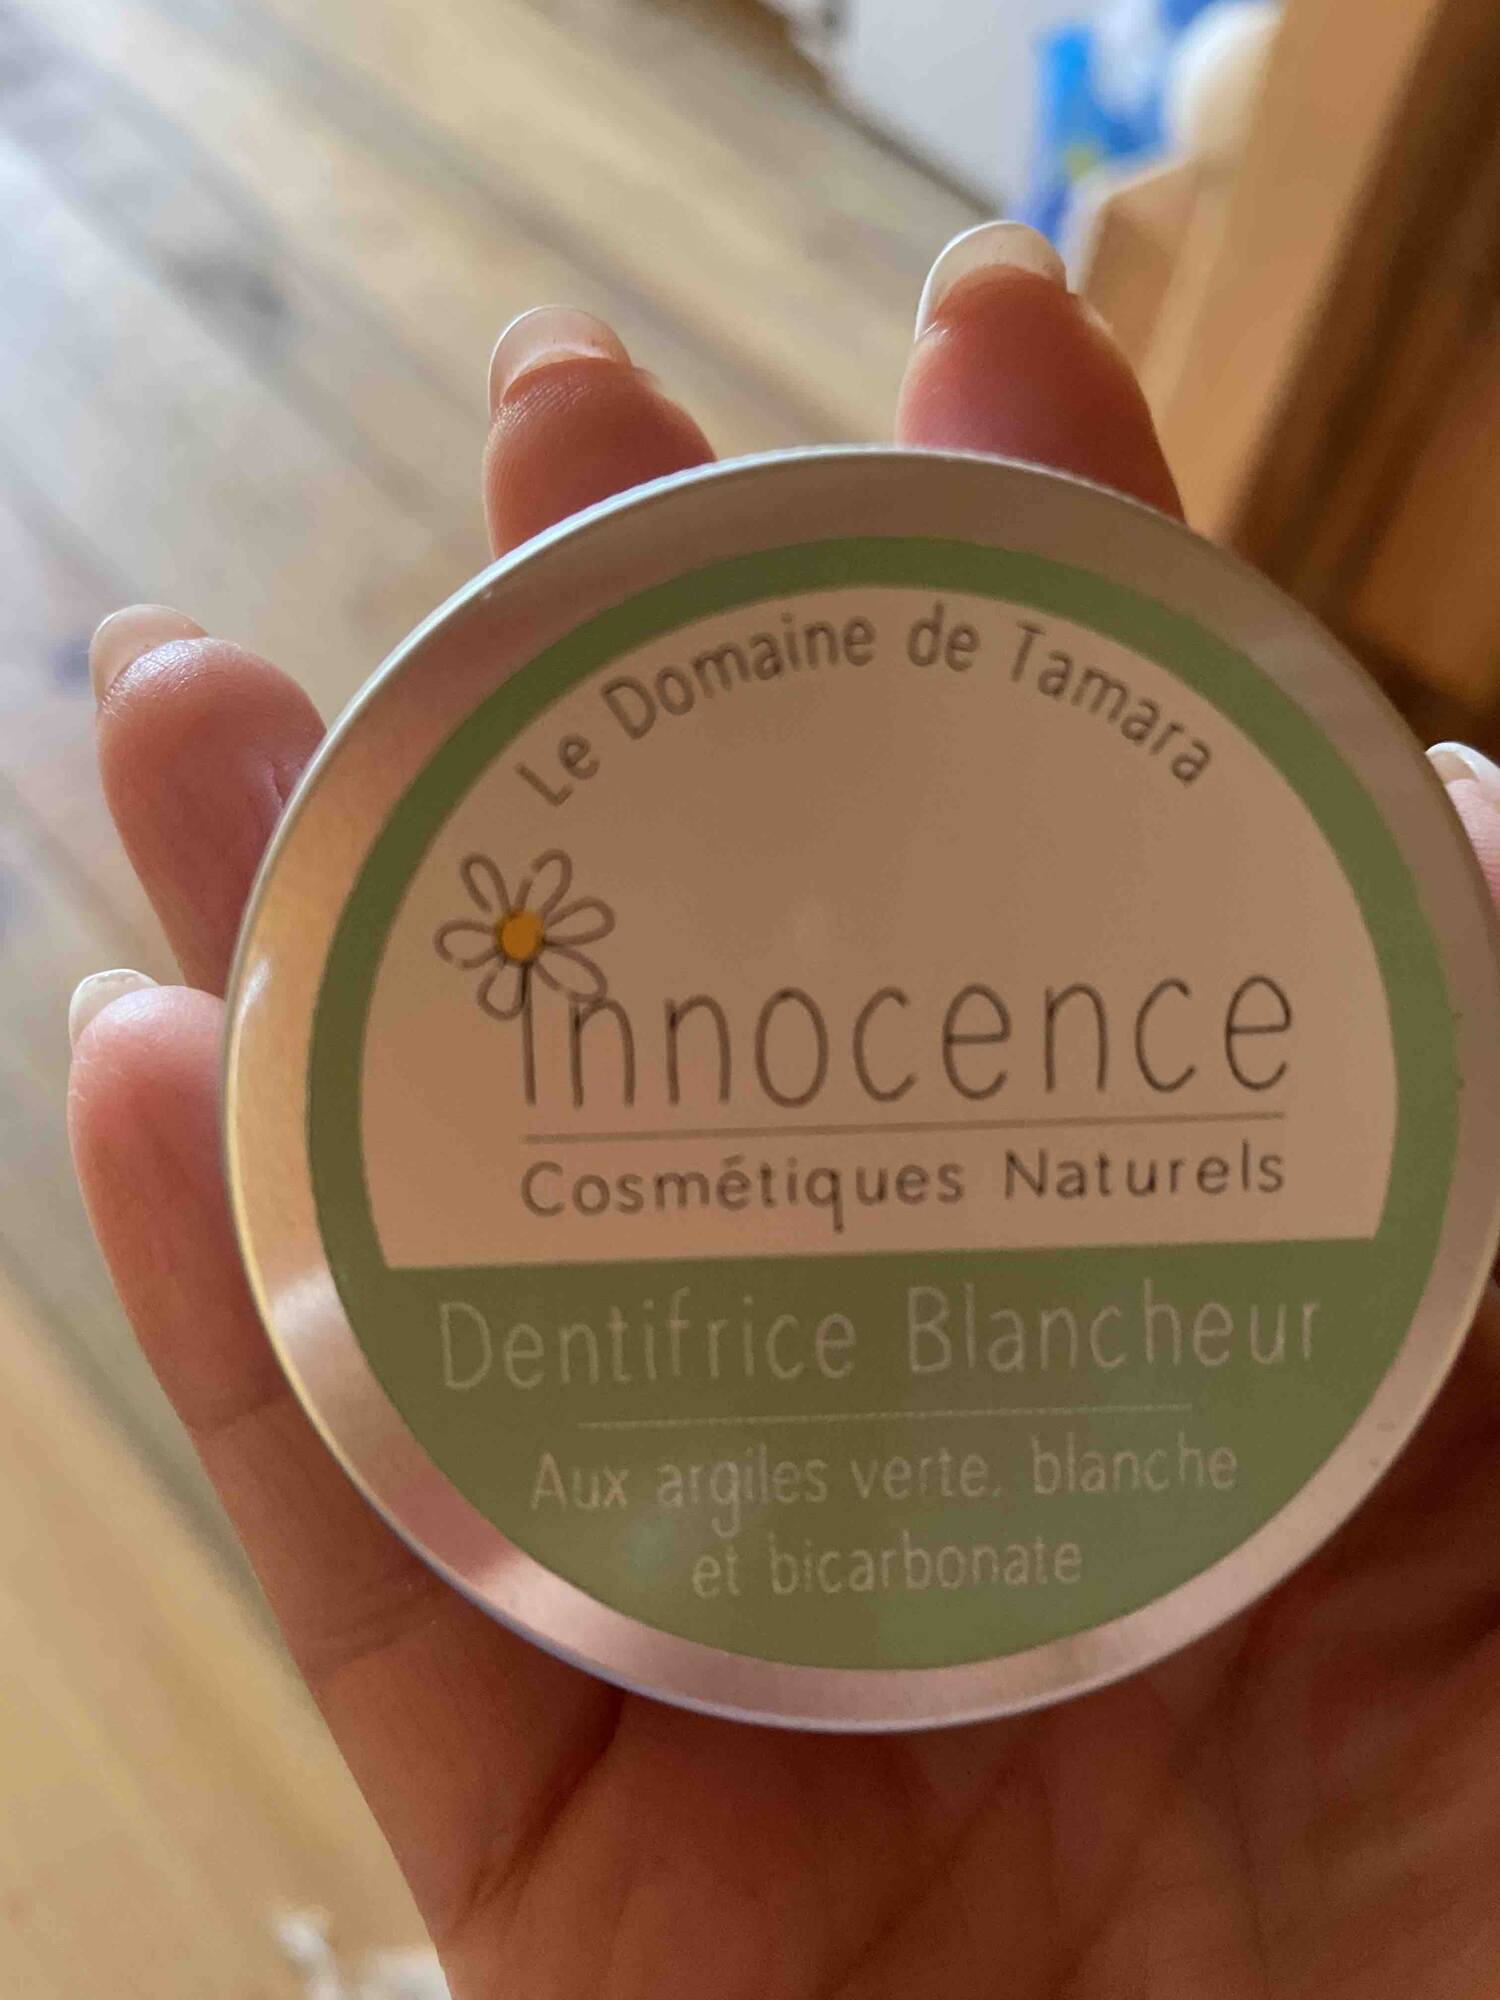 LE DOMAINE DE TAMARA - Innocence - Dentifrice blancheur